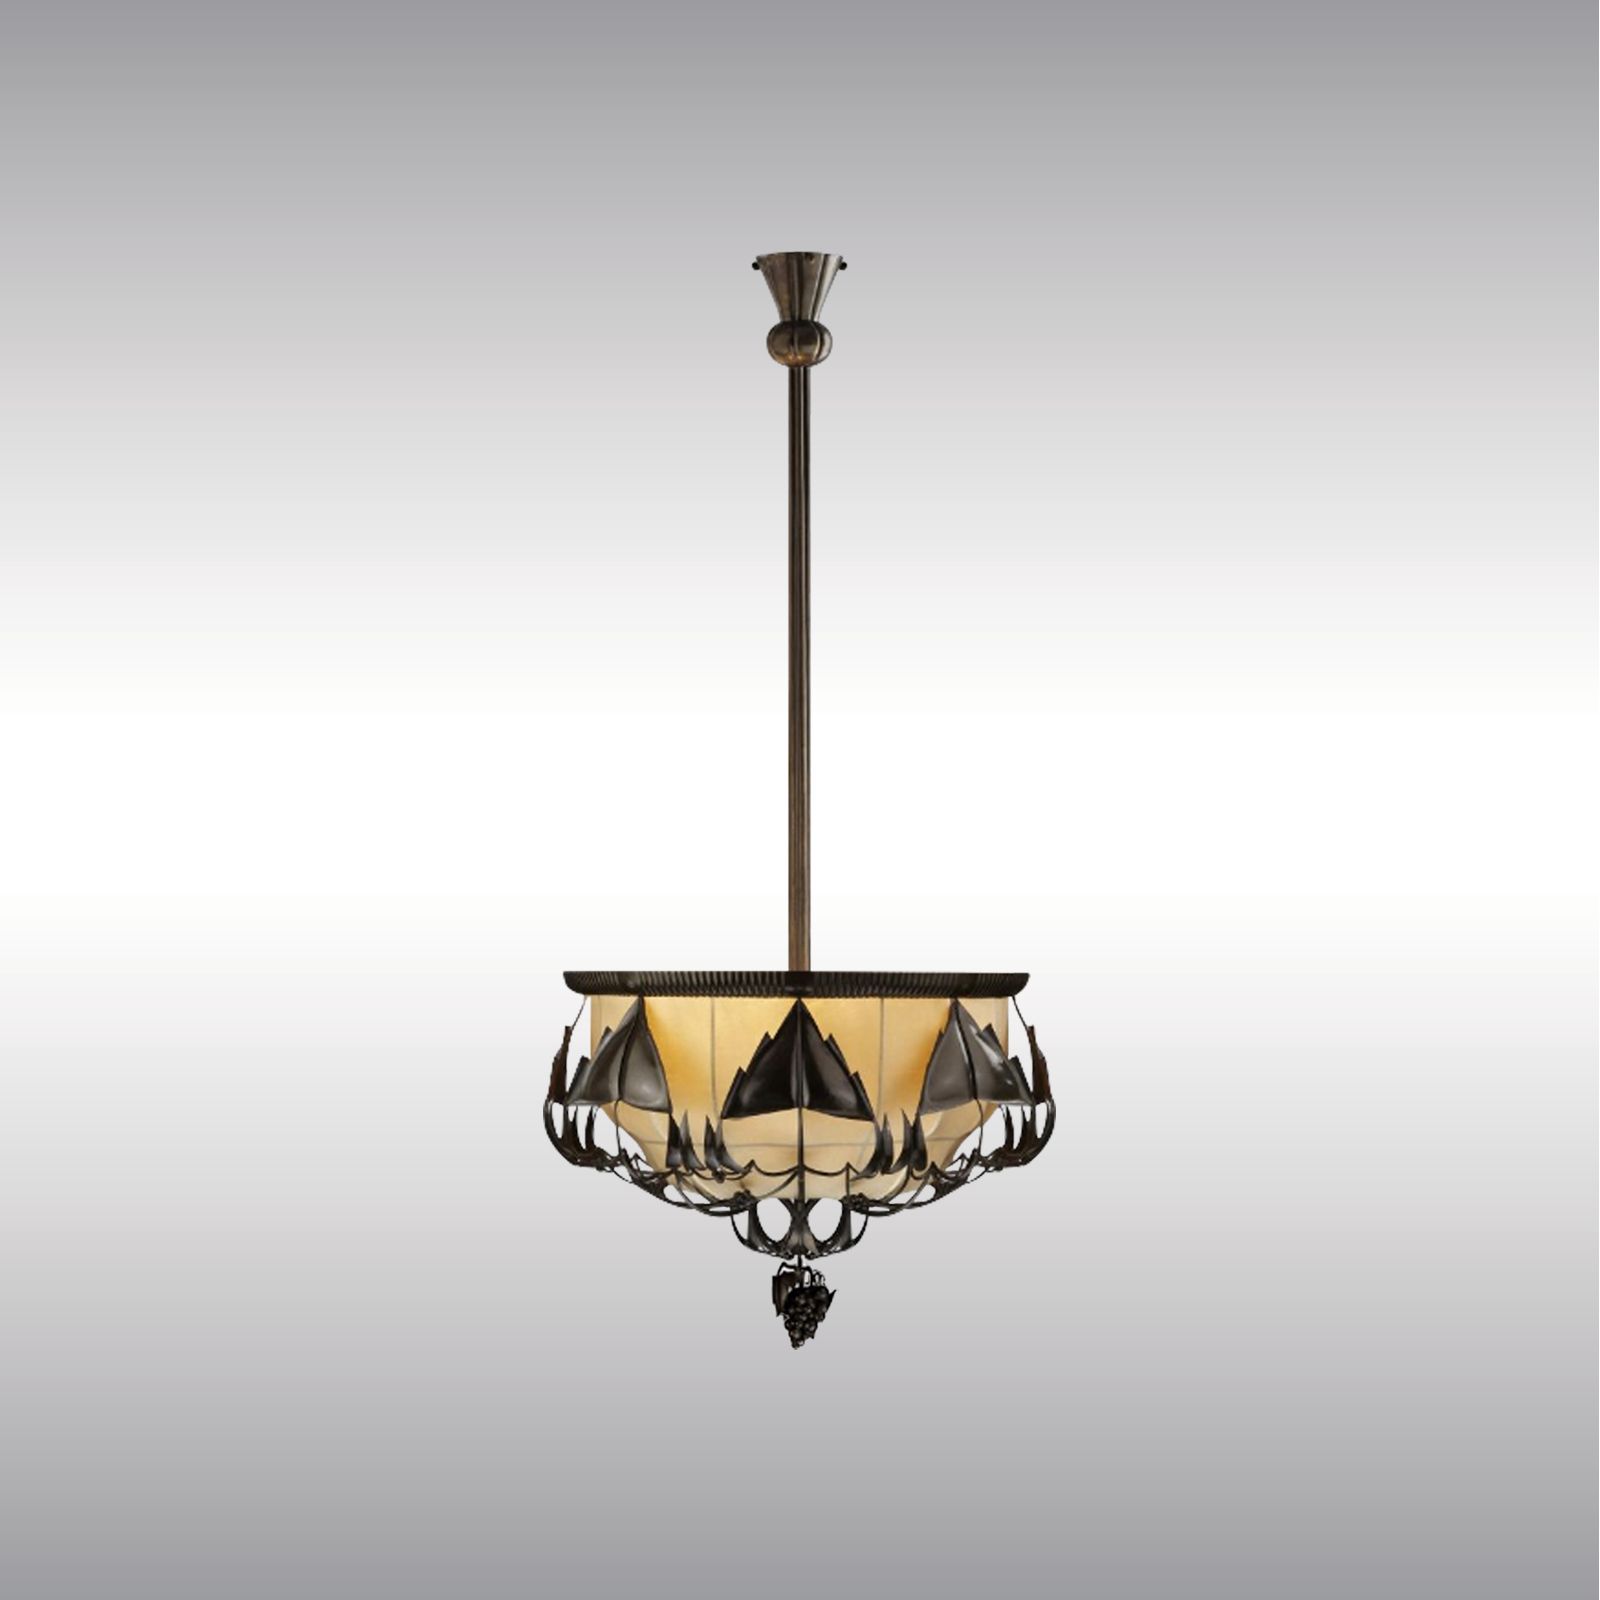 WOKA LAMPS VIENNA - OrderNr.: 21312|Peche2 - Design: Dagobert Peche